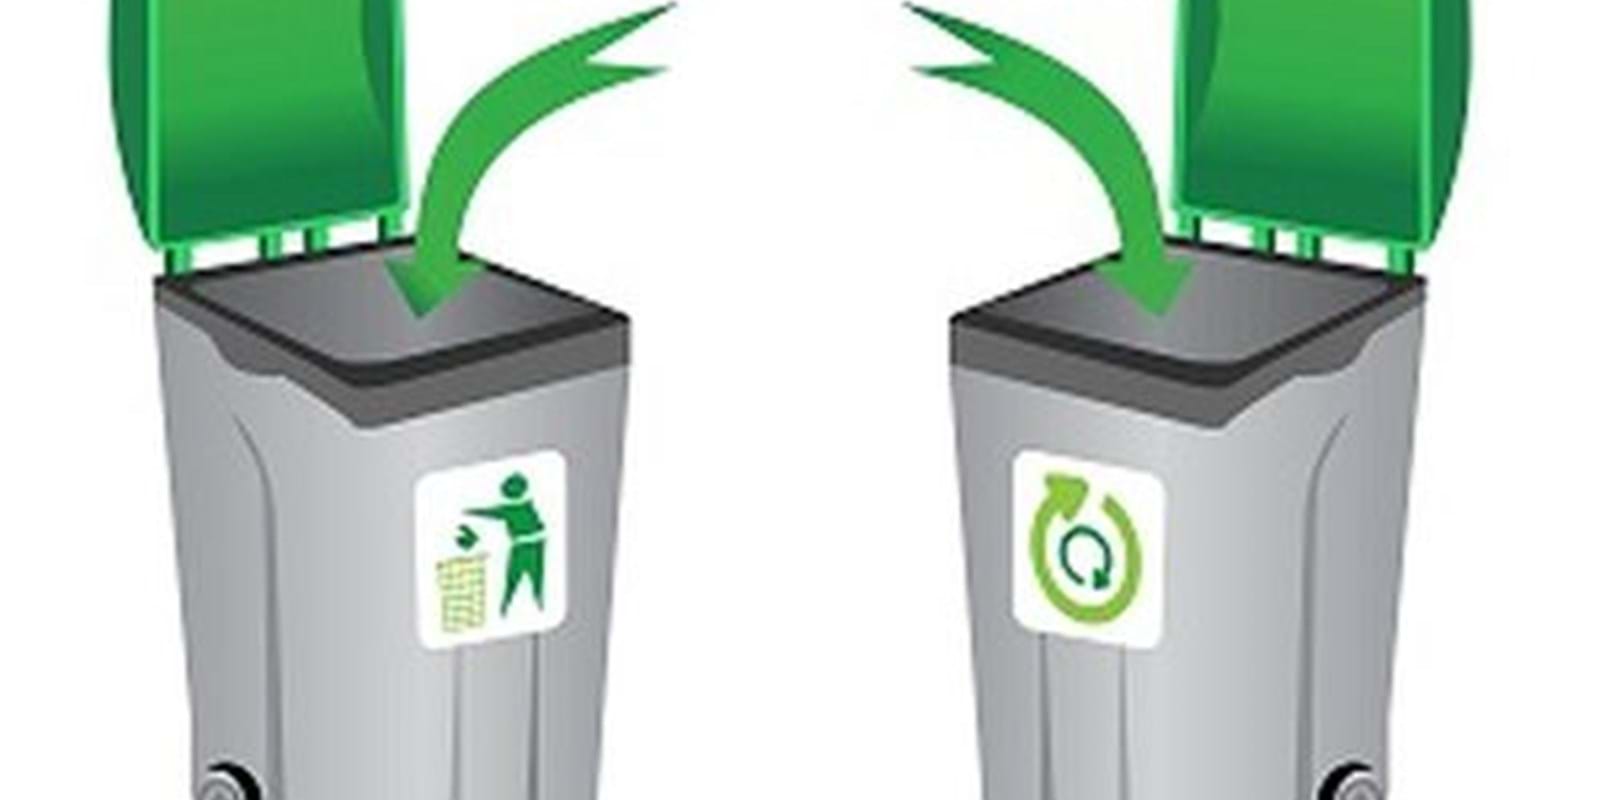 La ville de Montréal a finalement présenté son bac à recyclage officiel